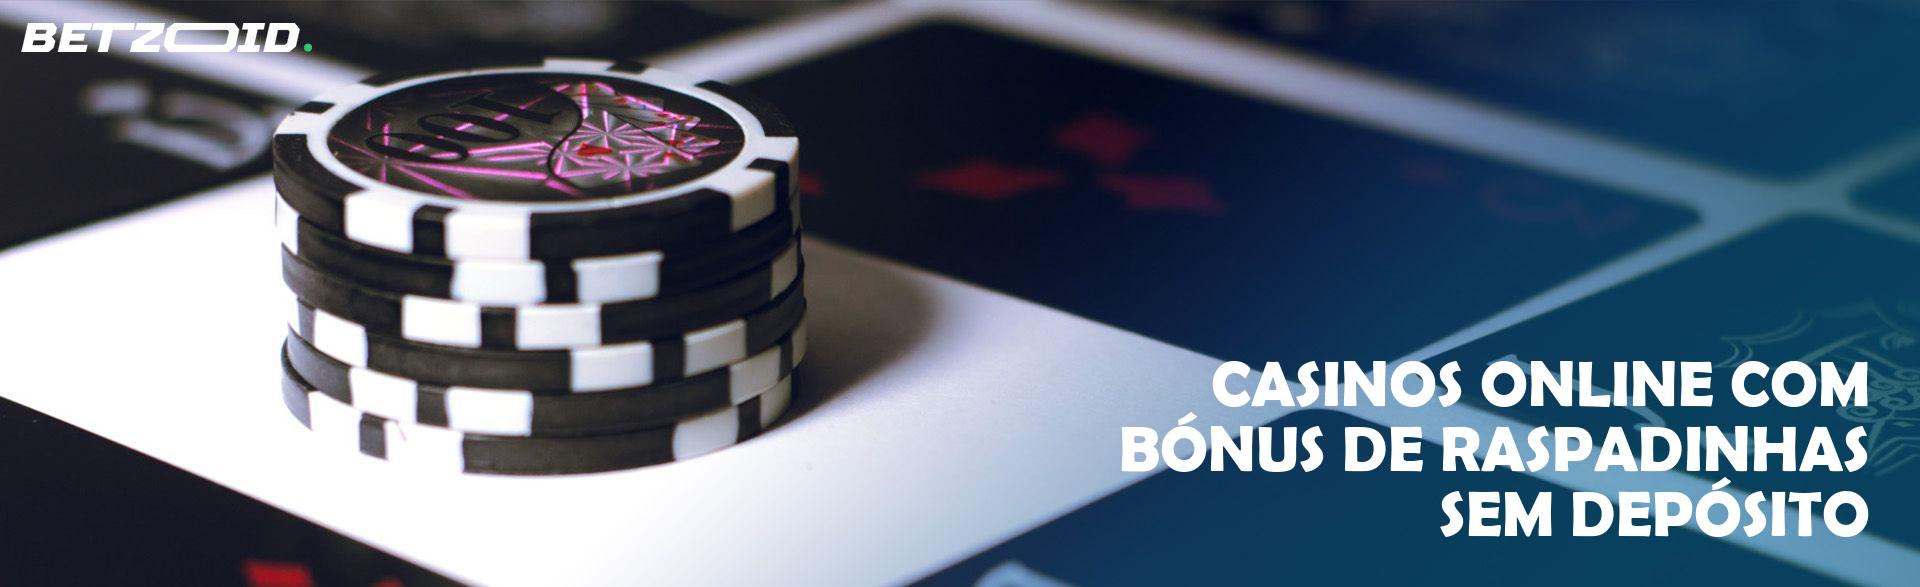 Casinos Online com Bónus de Raspadinhas sem Depósito.